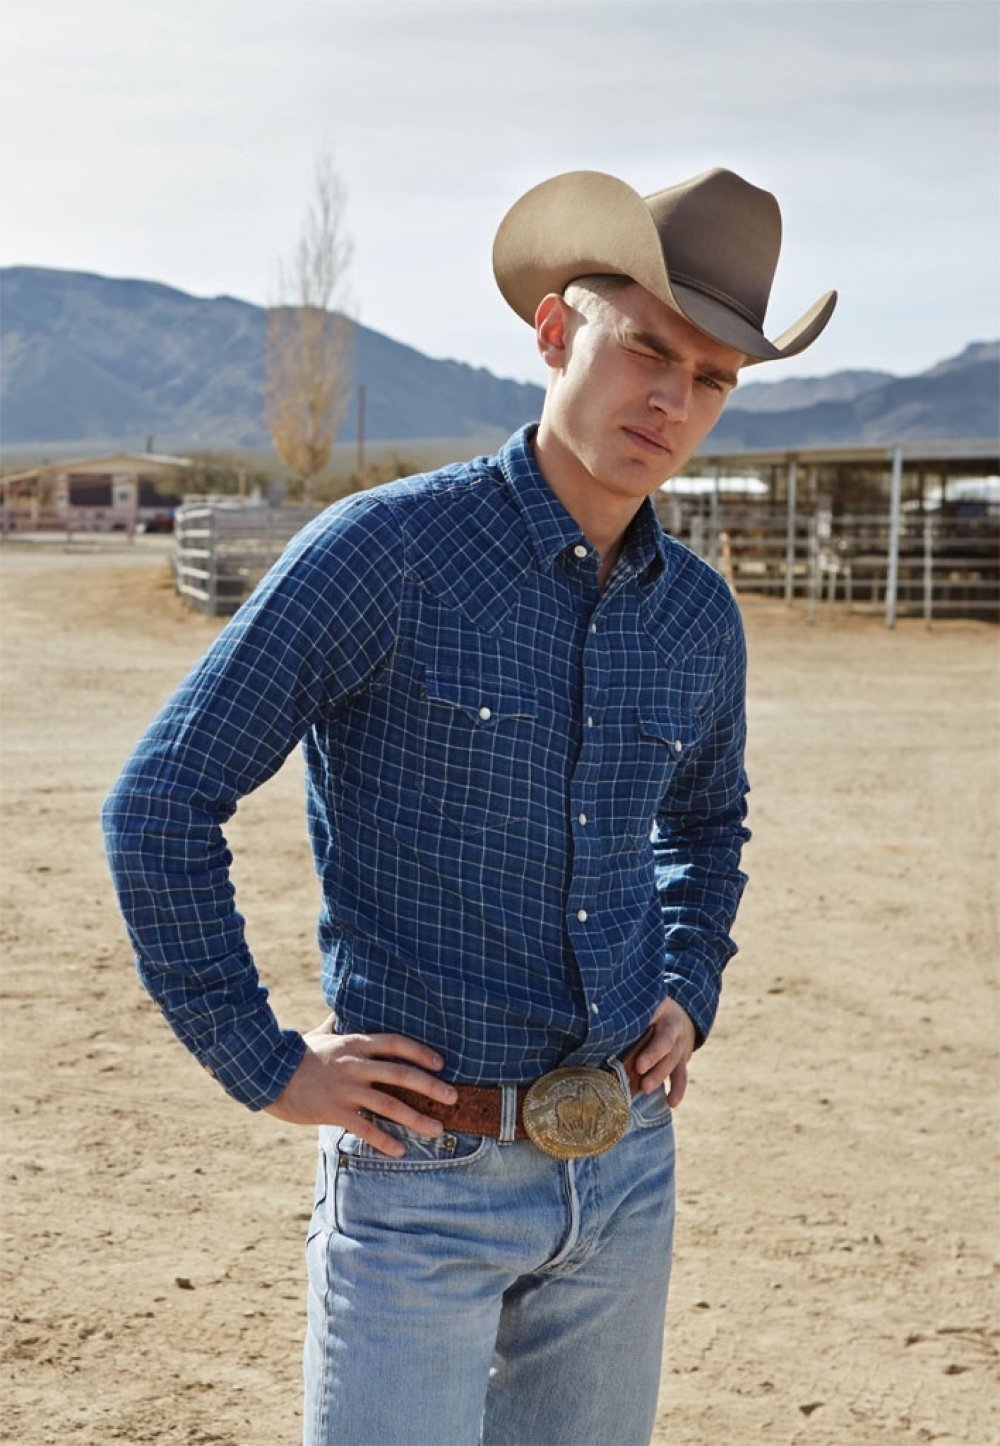 West man. Western & Cowboy стиль одежды. Bo Develius. Ковбойский стиль мужской. Одежда дикого Запада для мужчин.